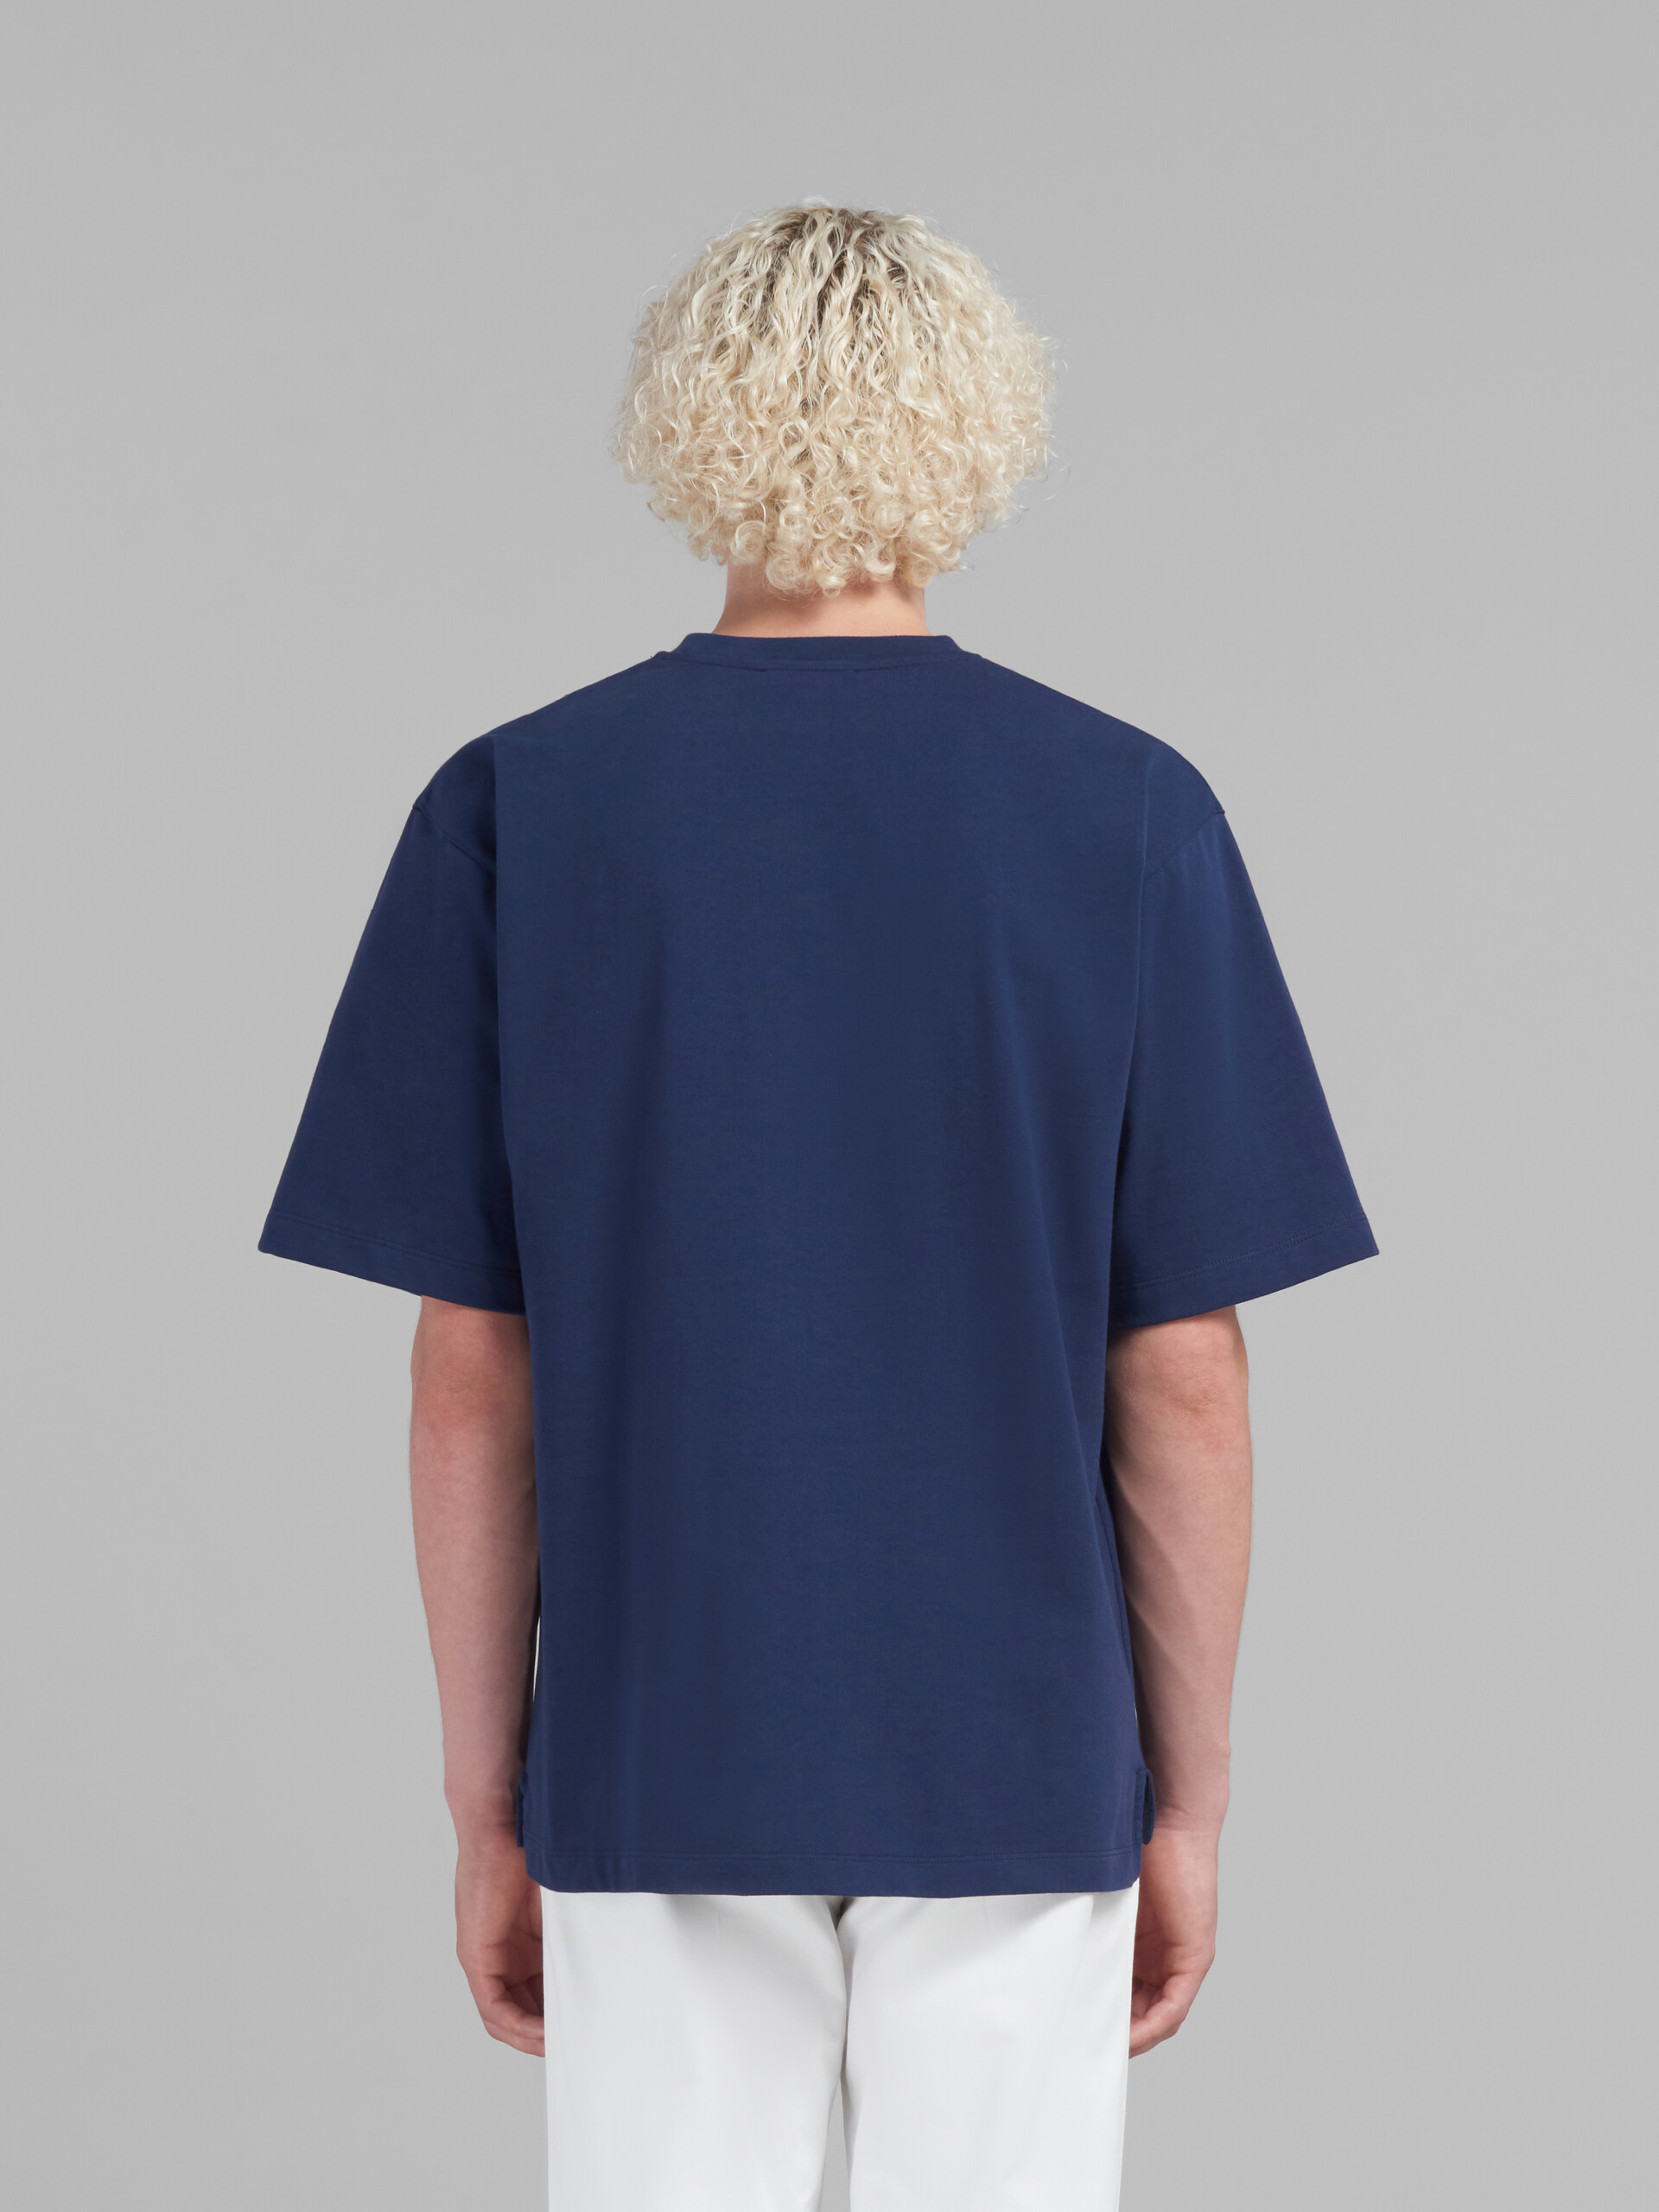 Camiseta oversize azul de algodón ecológico con parches Marni - Camisetas - Image 3